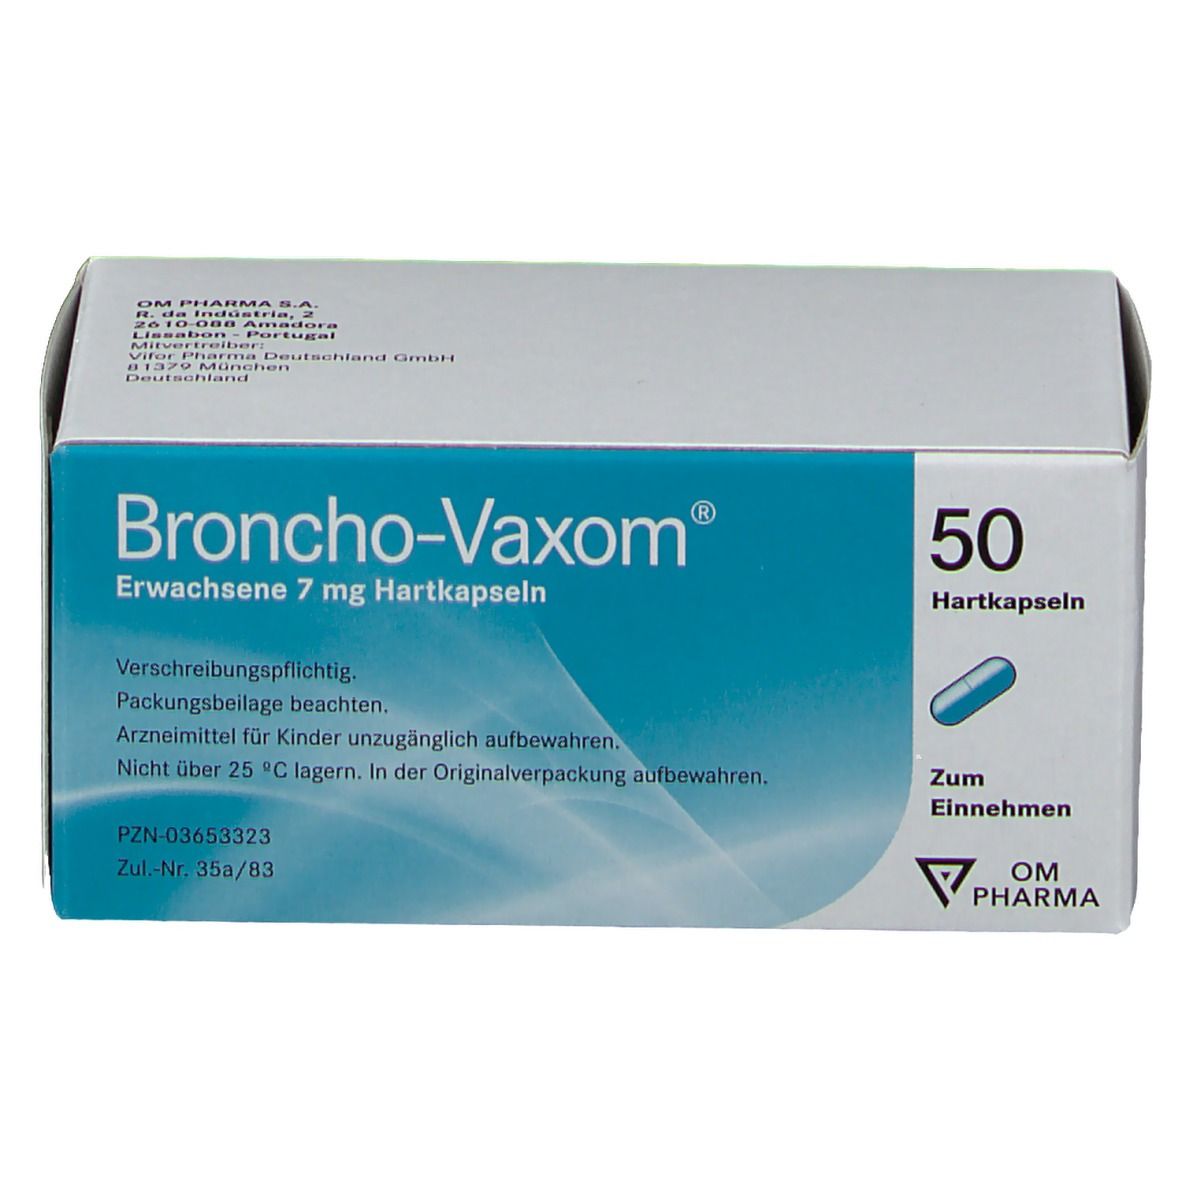 Broncho-Vaxom®